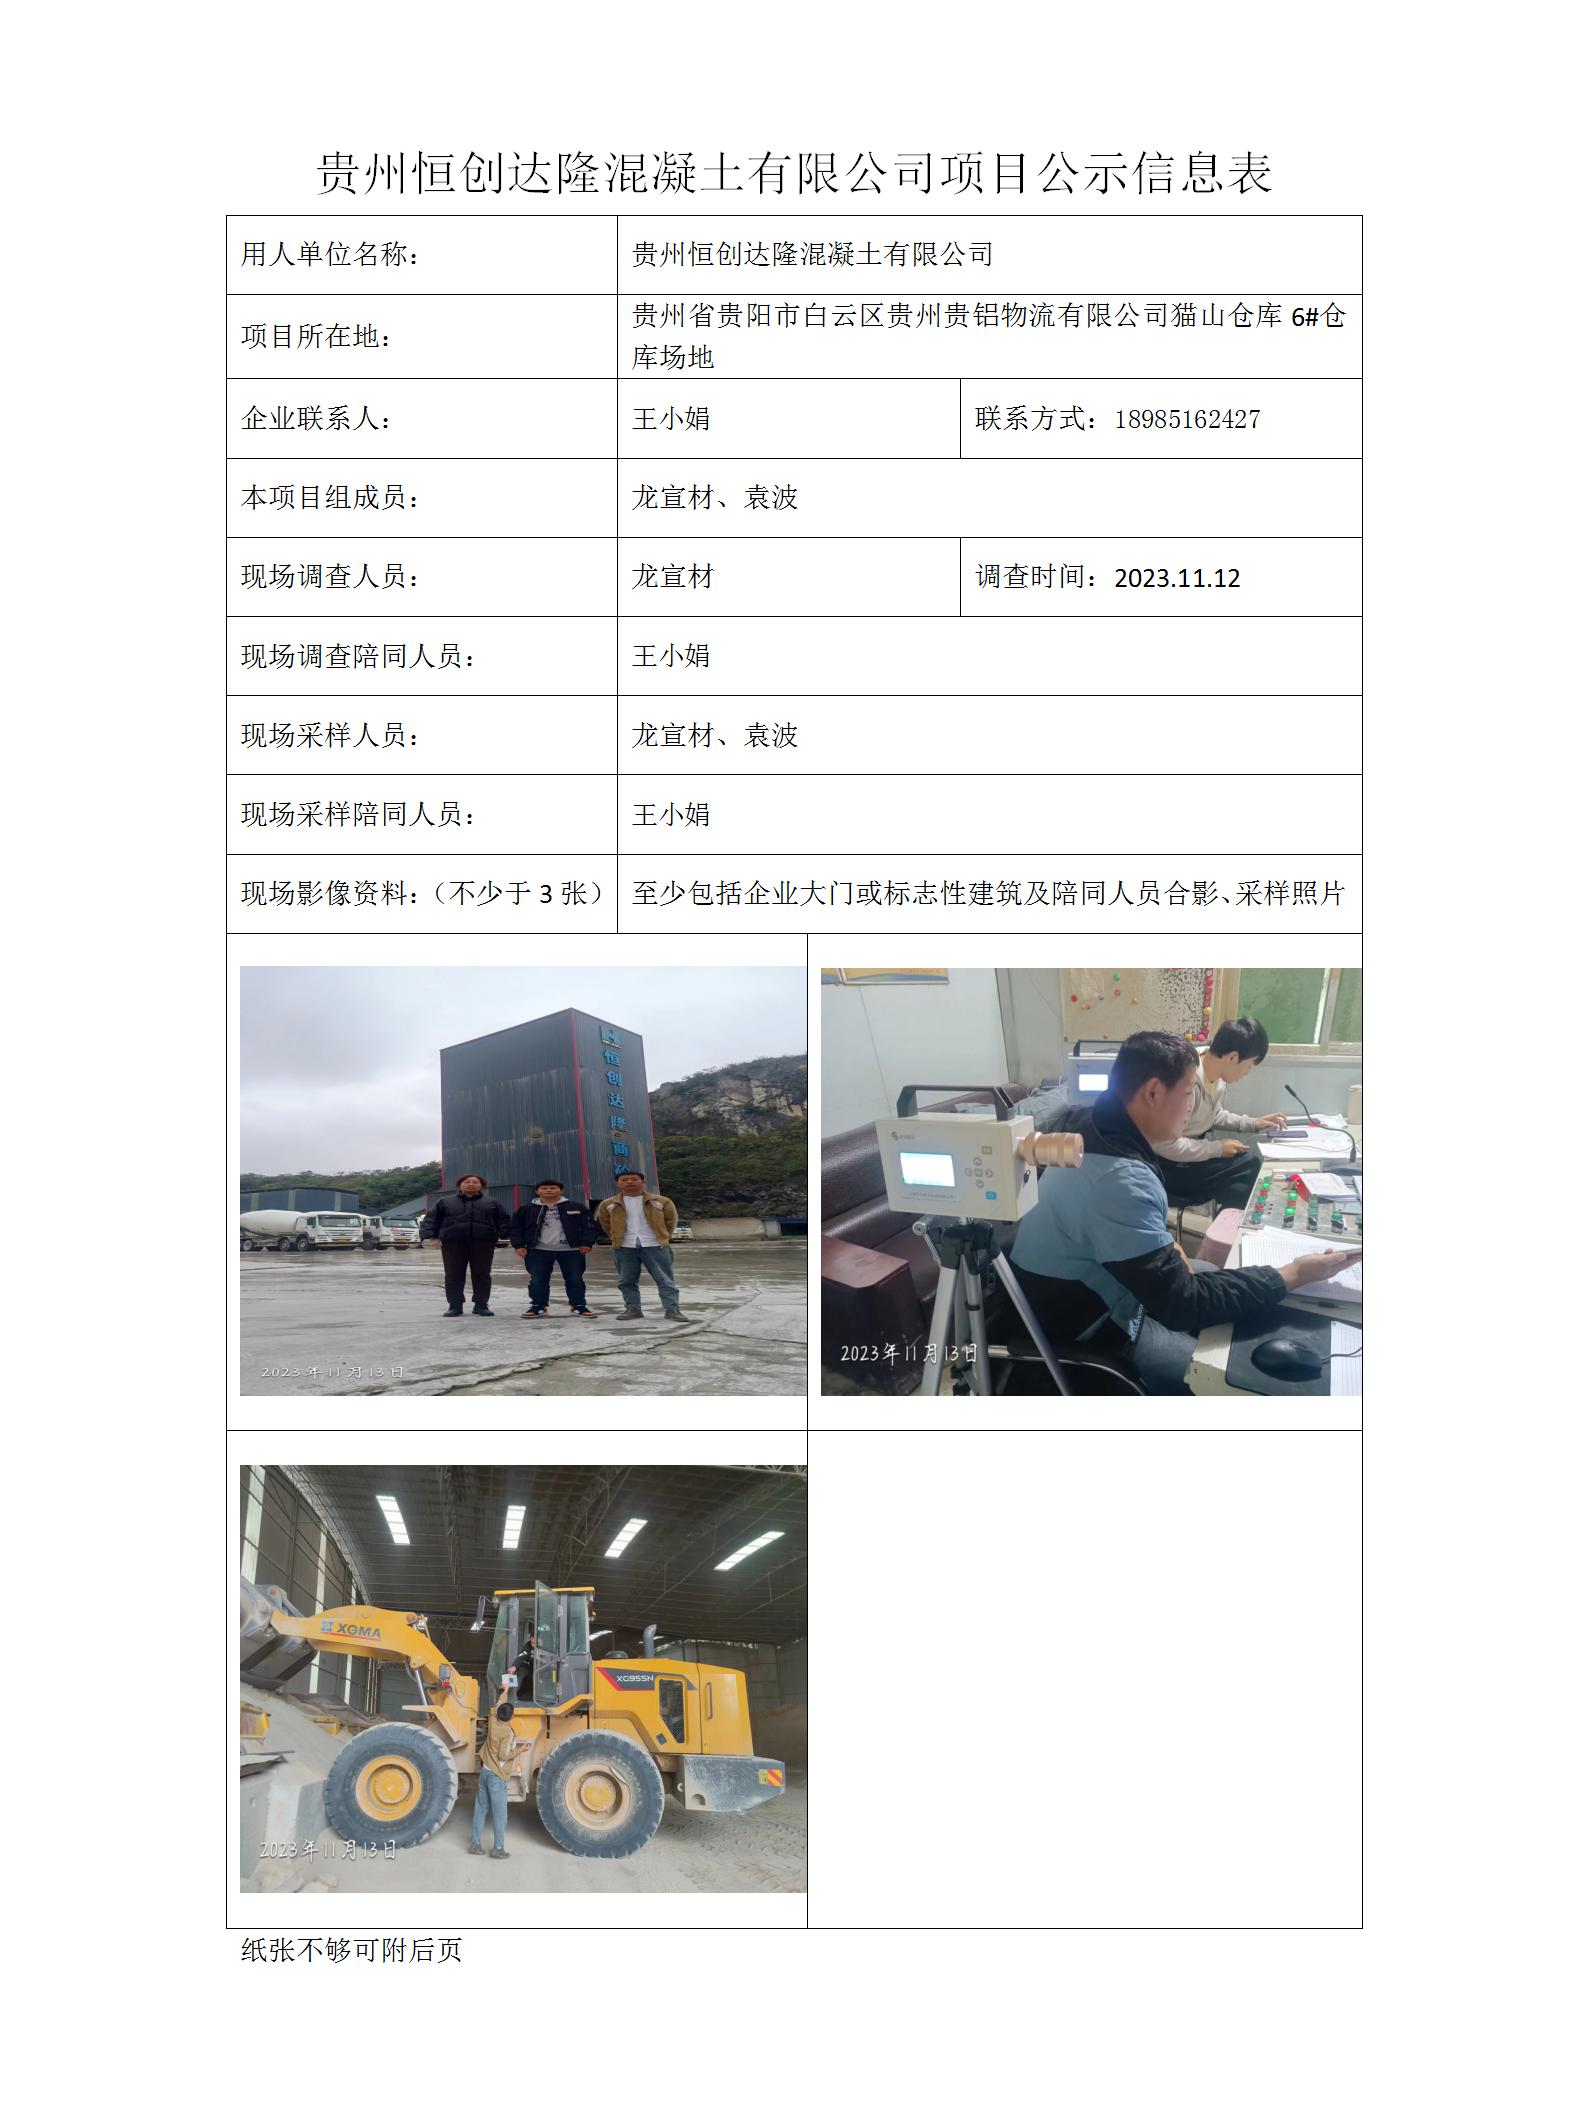 贵州恒创达隆混凝土有限公司项目公示信息表_01.jpg